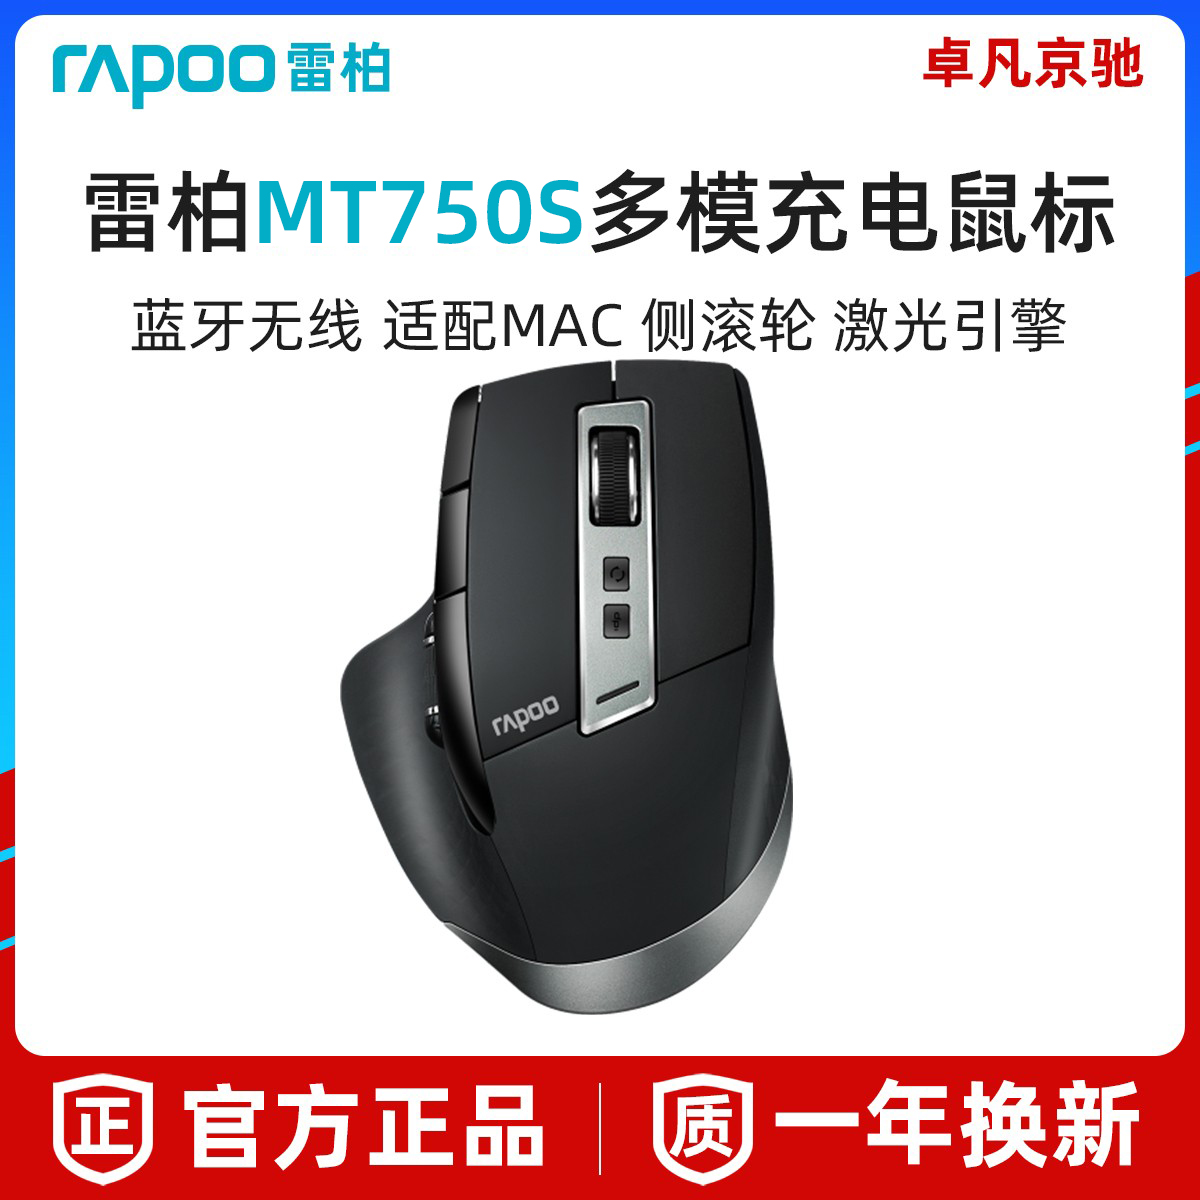 雷柏MT750S无线蓝牙鼠标可充电多模式游戏笔记本台式办公家用大手